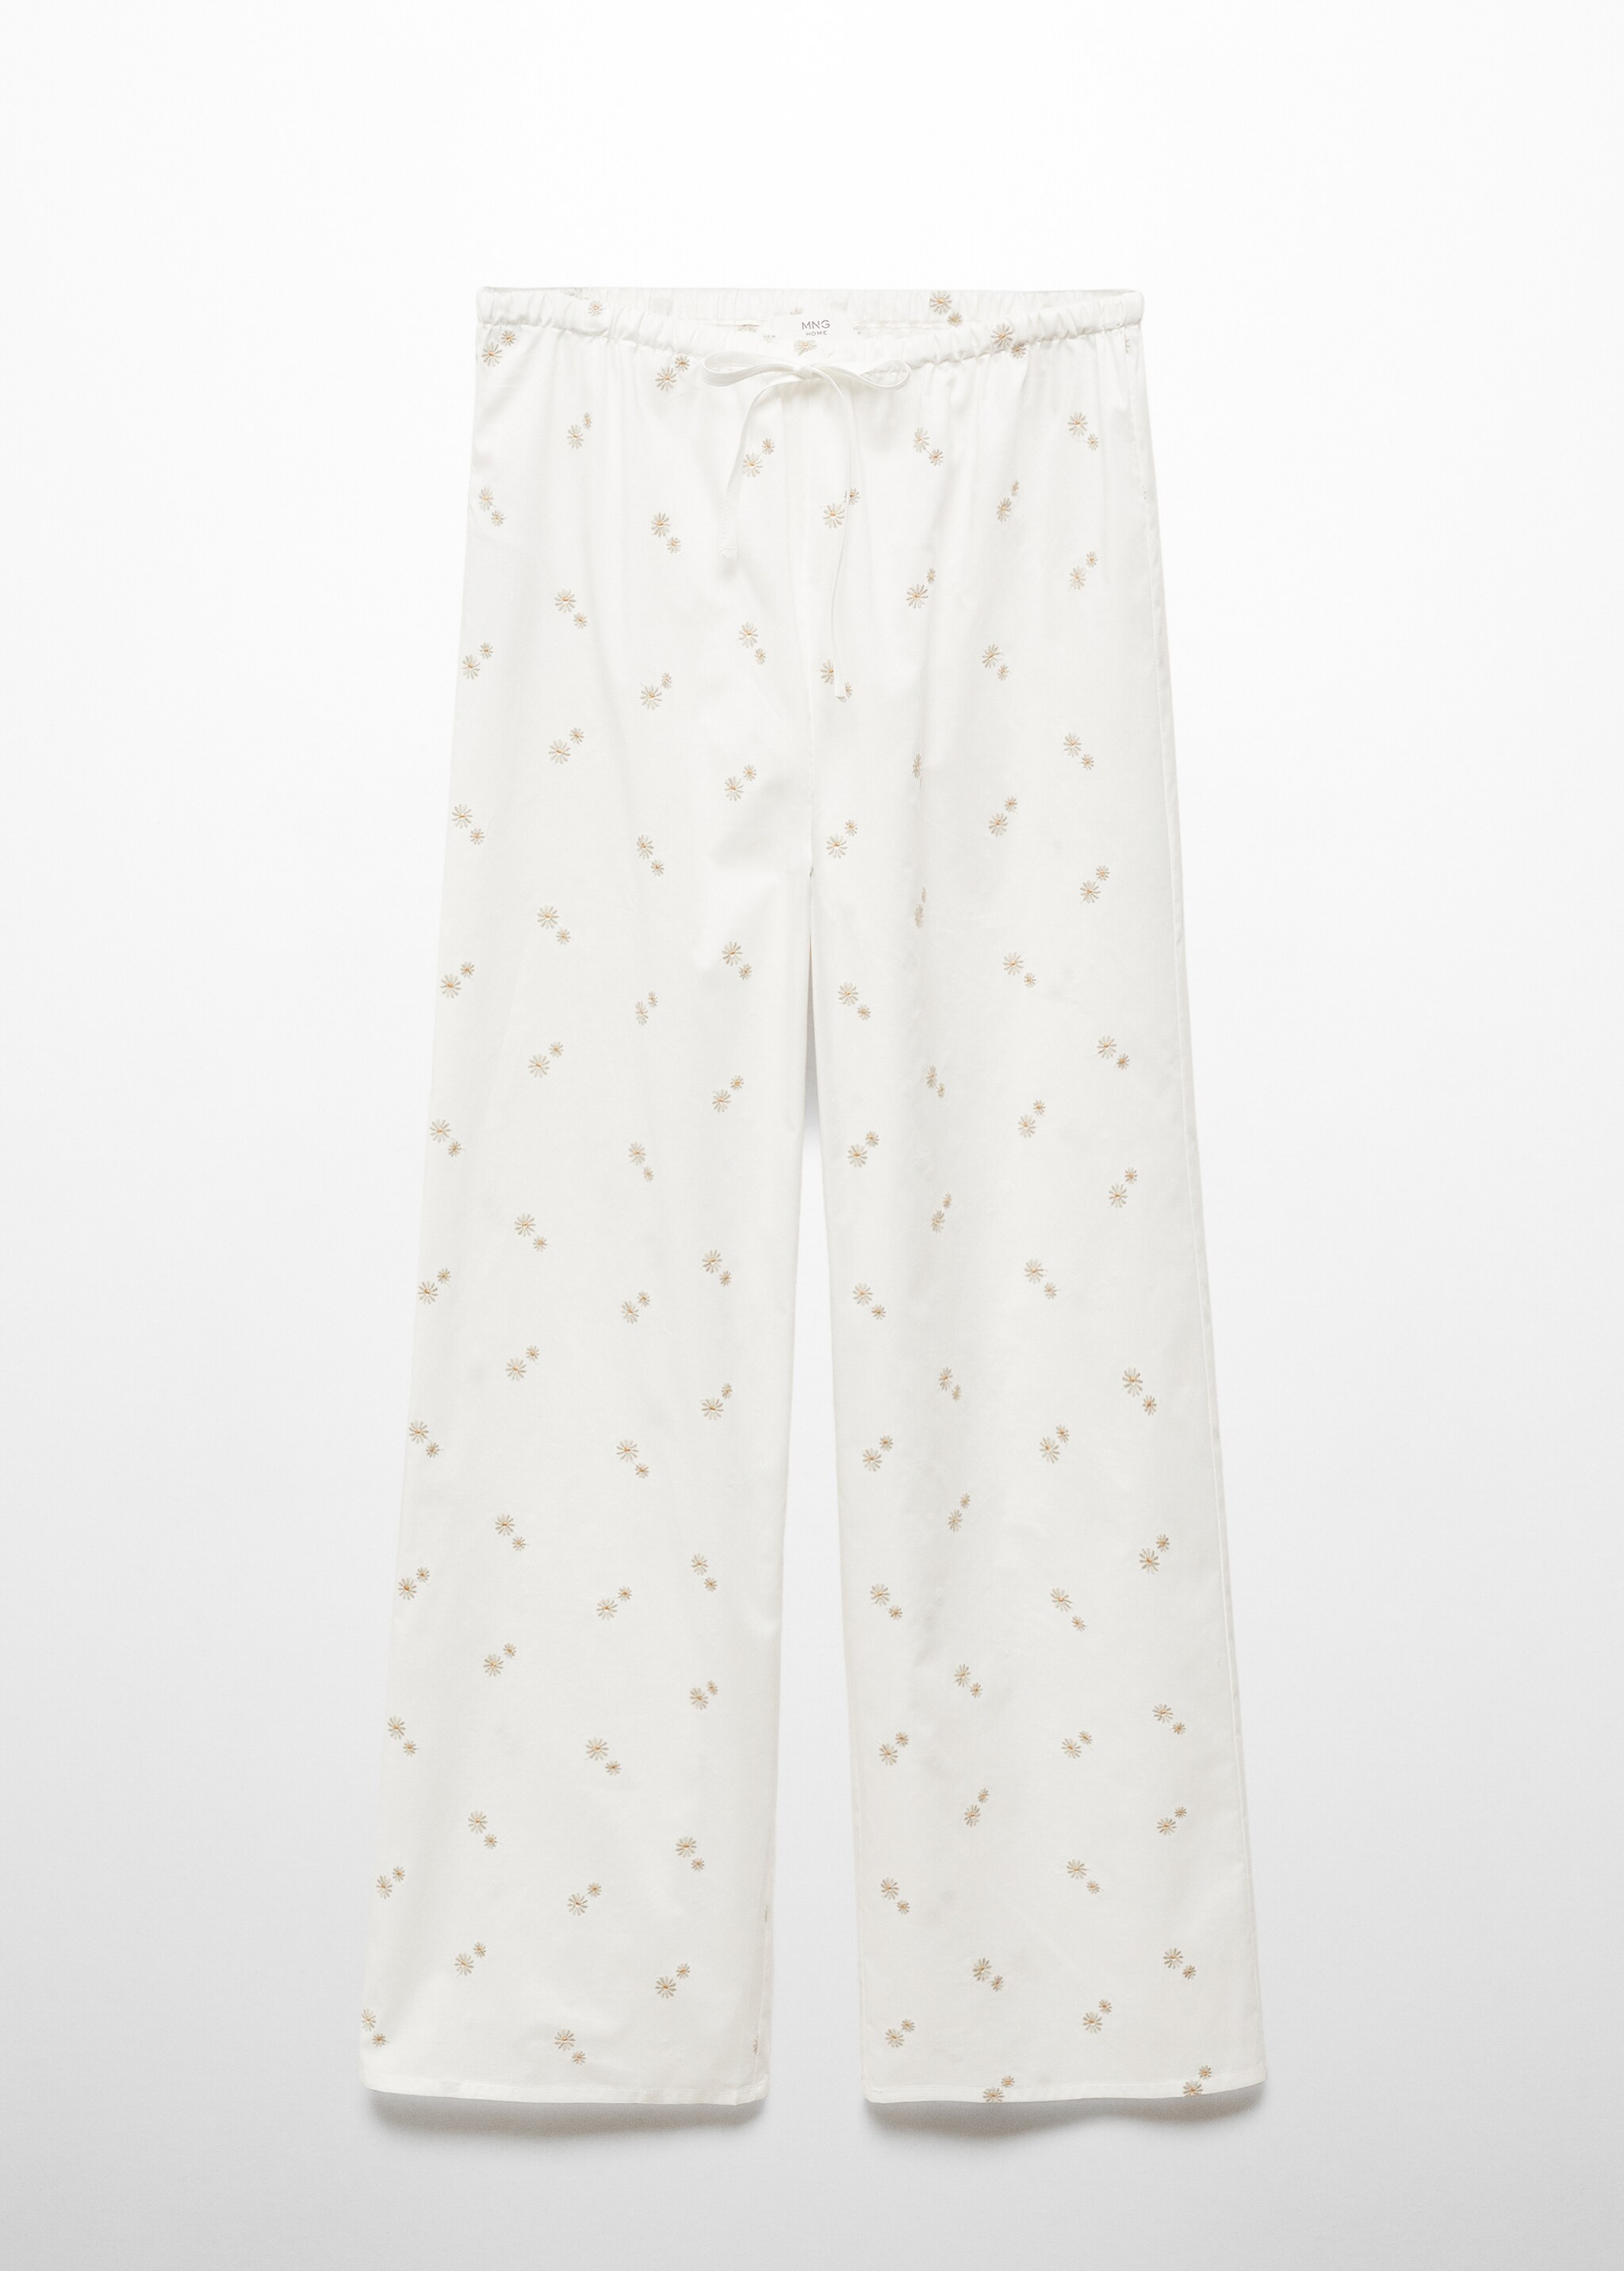 Pantalón pijama algodón bordado floral - Artículo sin modelo